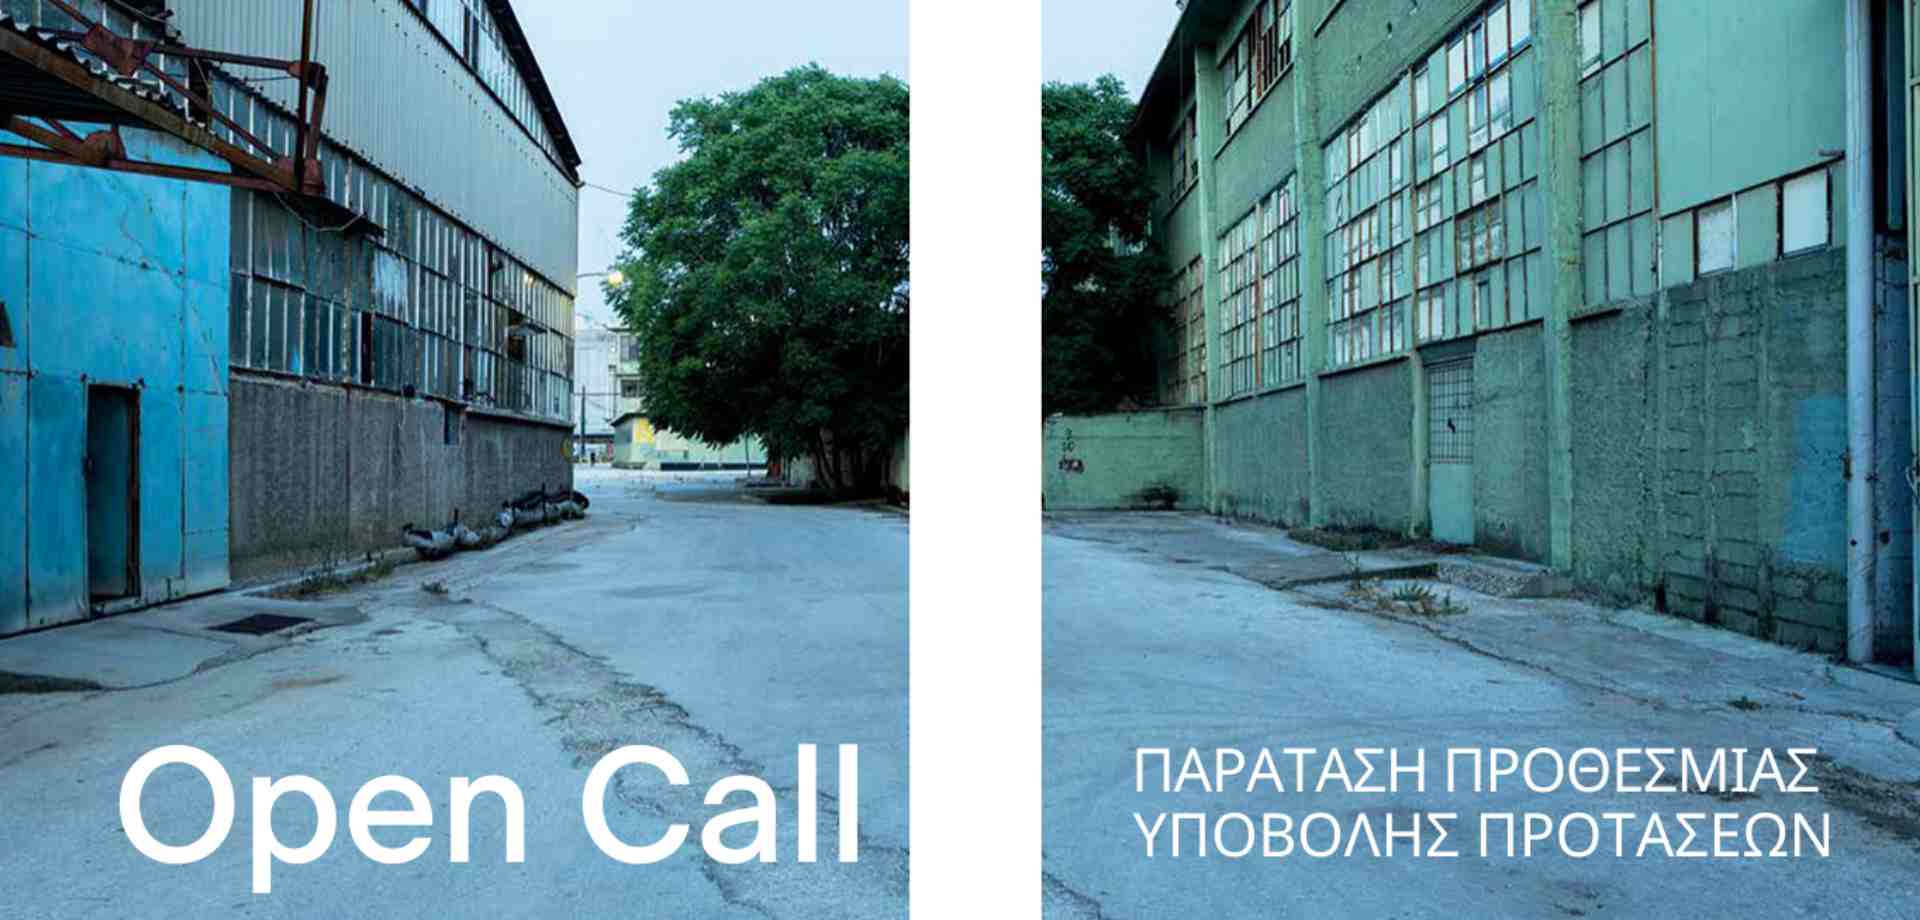 Φεστιβάλ Αθηνών και Επιδαύρου 2022 - Open call